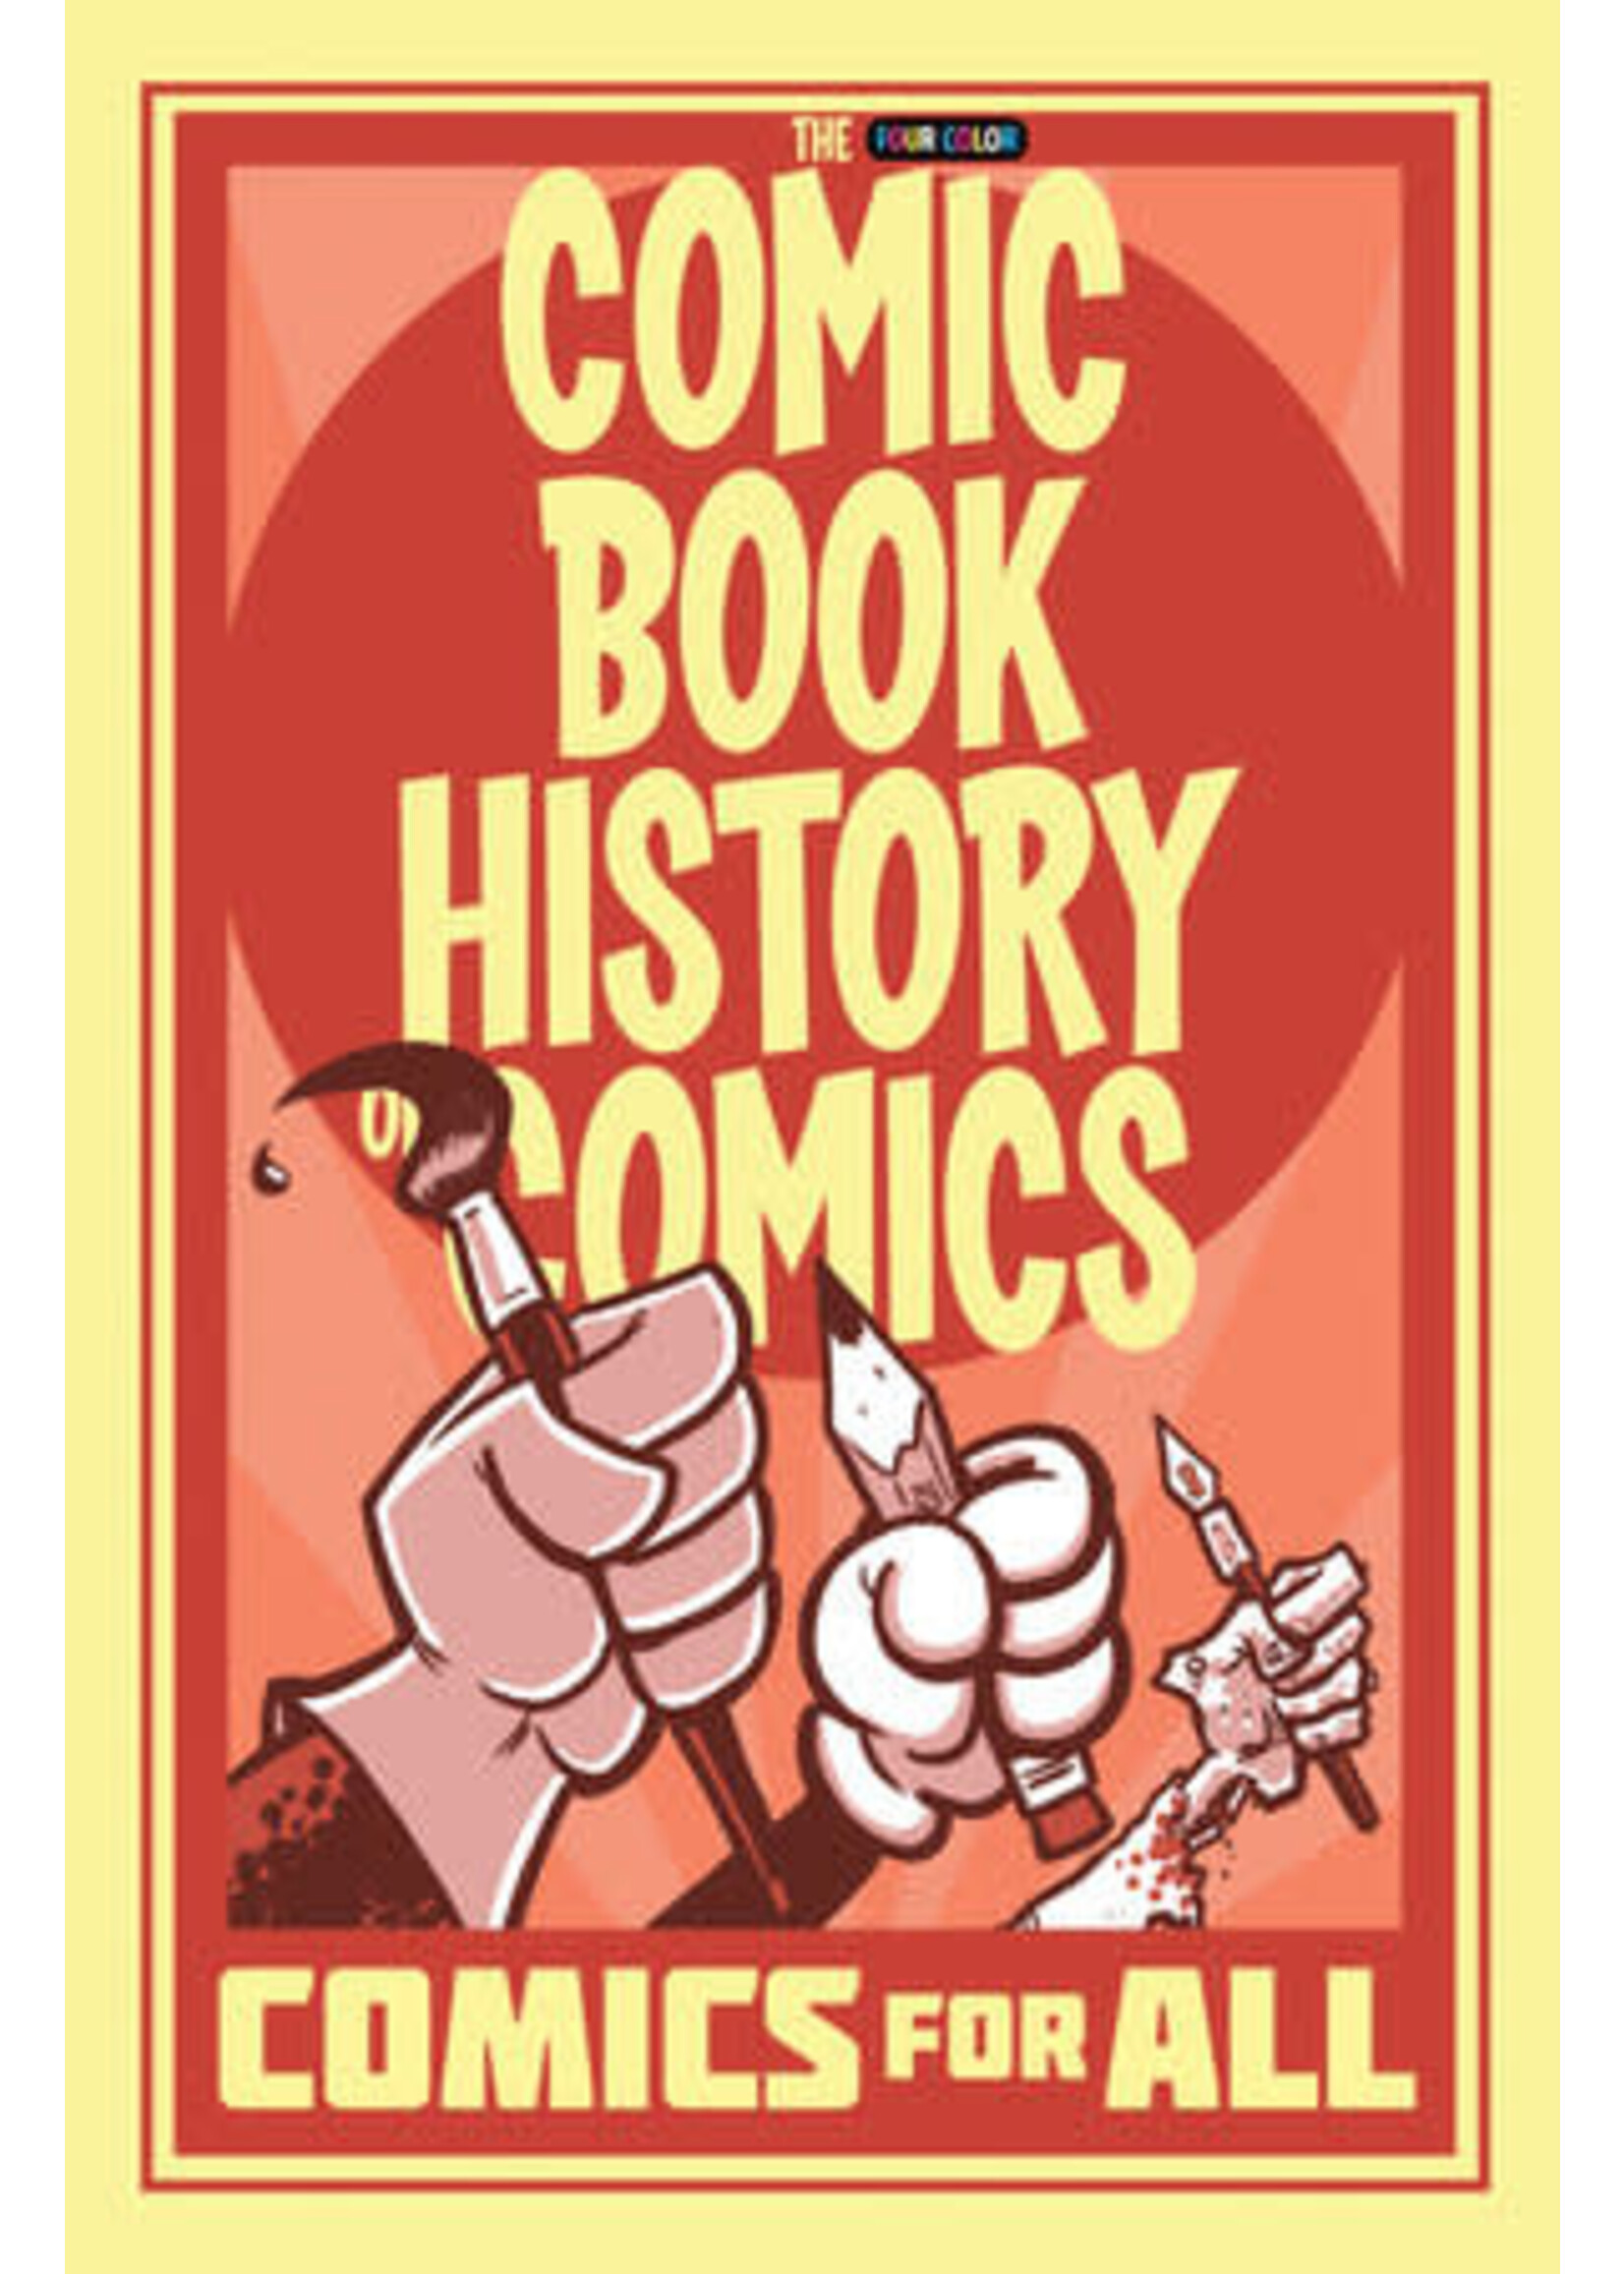 IDW PUBLISHING COMIC BOOK HISTORY OF COMICS COMICS FOR ALL